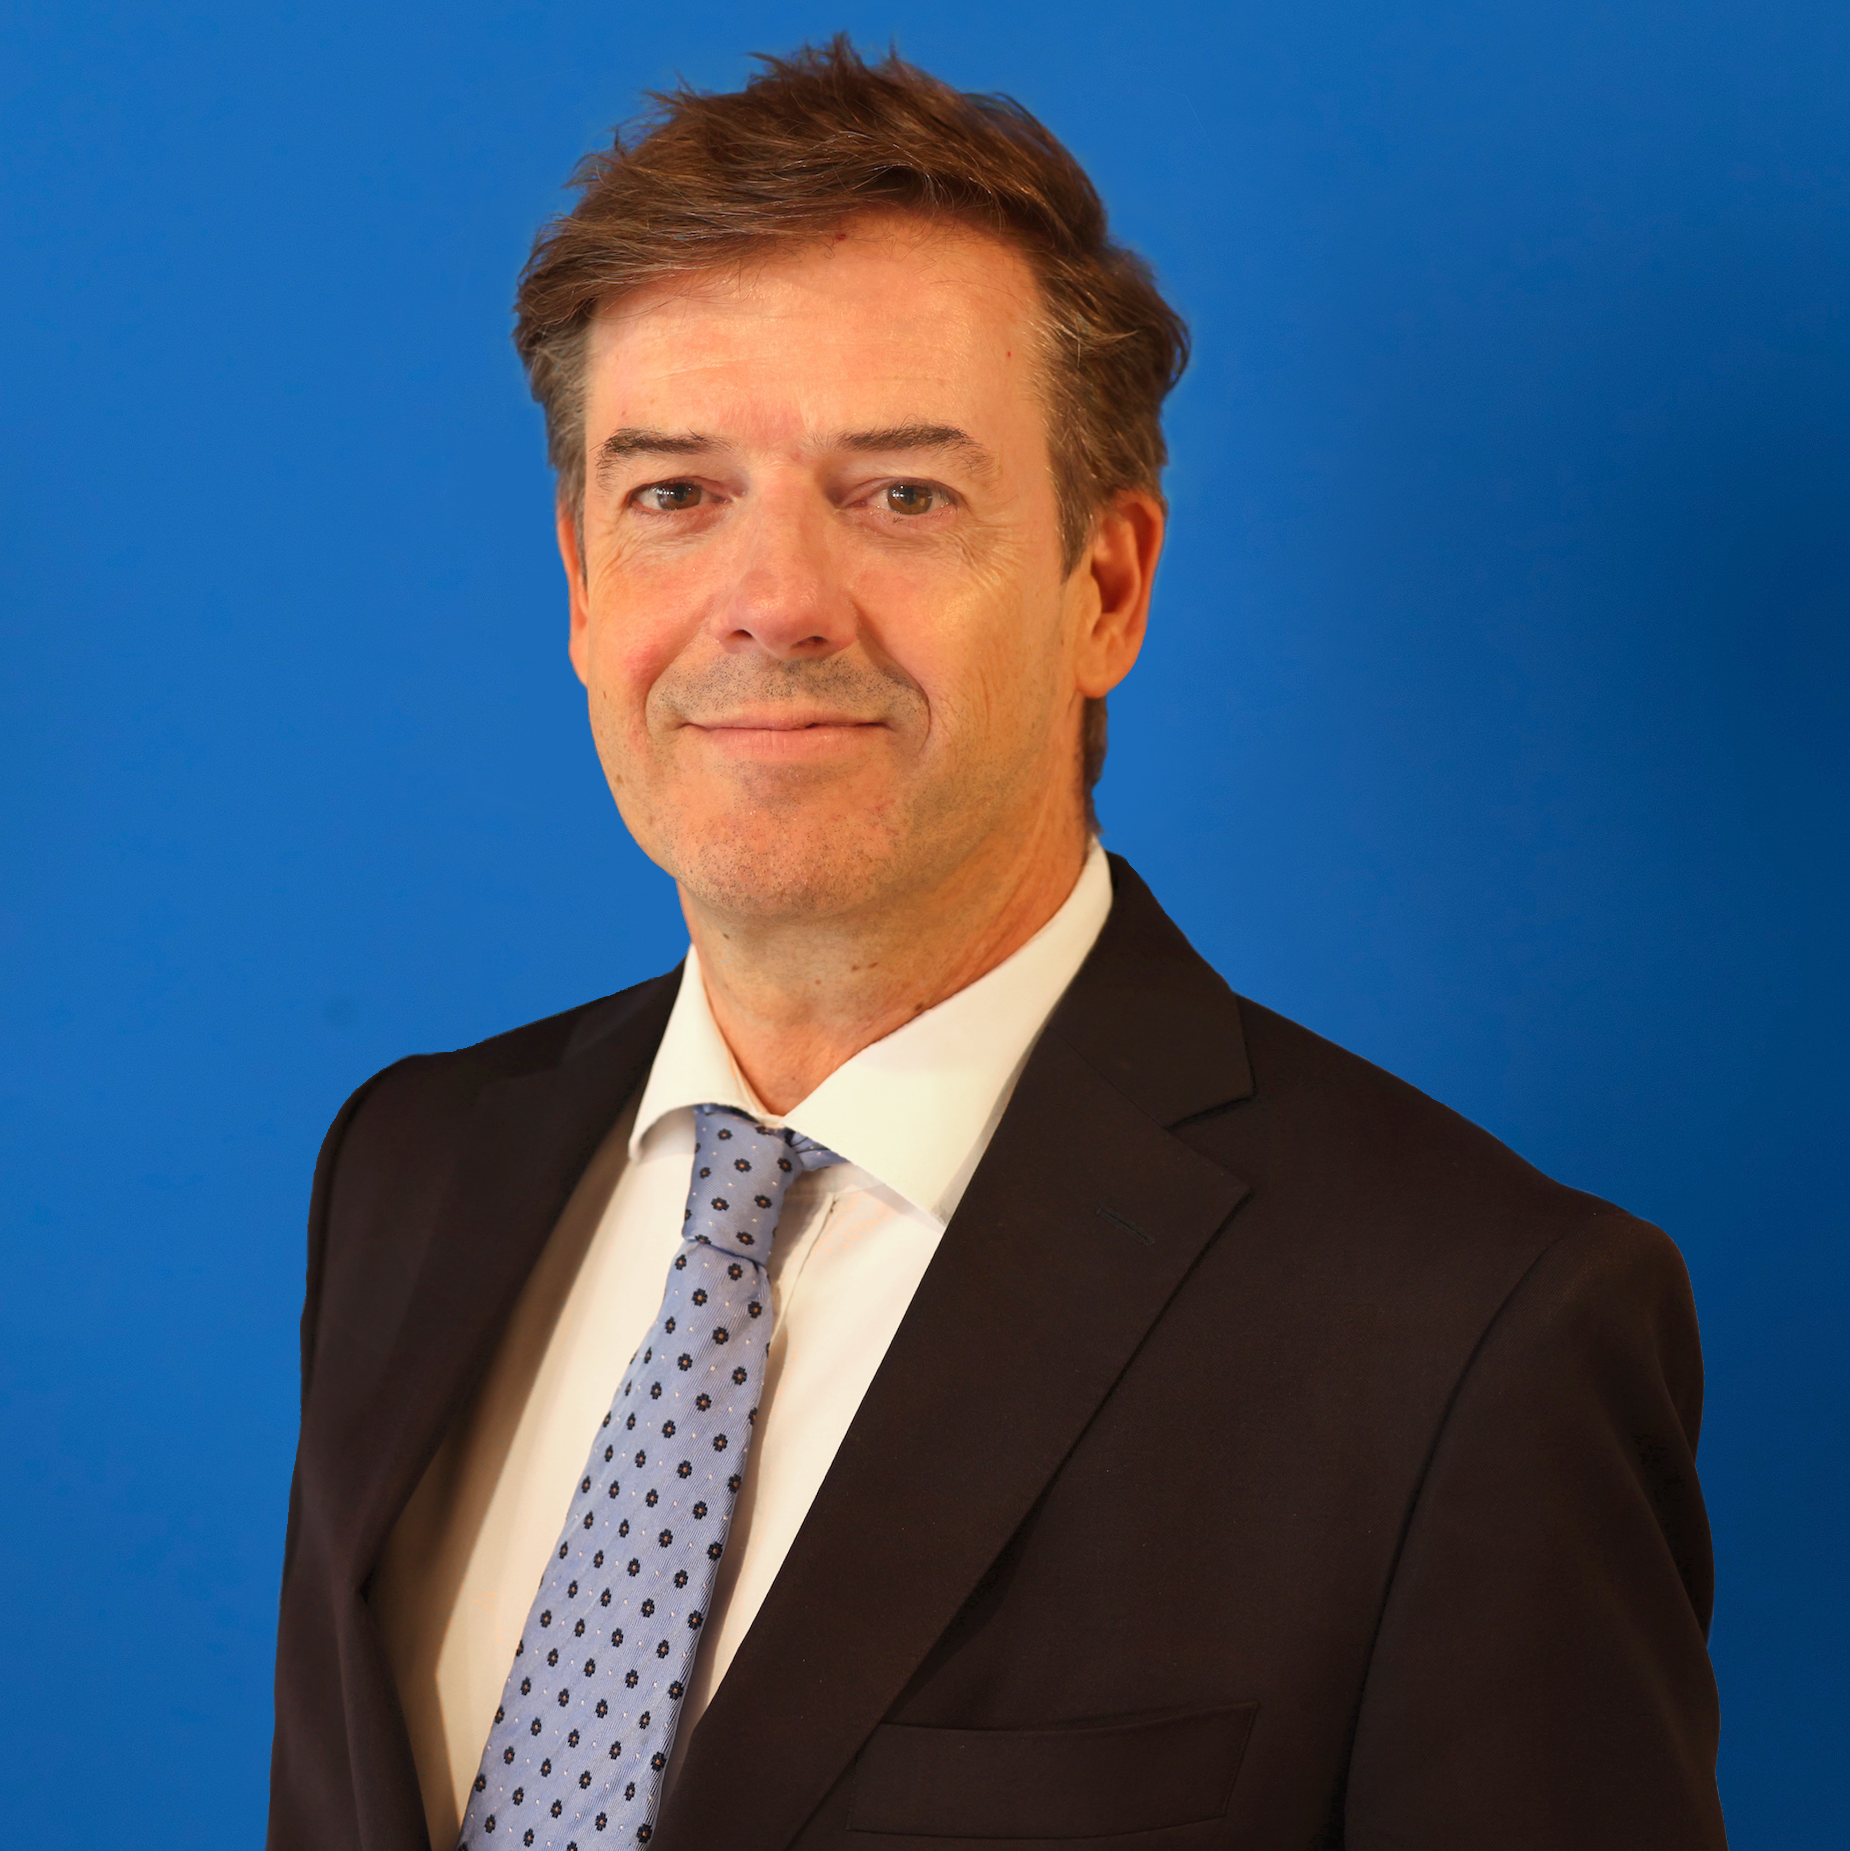 Mr. Alexander Broekhoven - Ervaren advocaat in verbintenissenrecht en handelsrecht bij Bos van Eck Advocaten sinds 2023, met een brede expertise variërend van commercieel recht tot civiel bouwrecht, bekend om zijn integriteit, transparantie, en toewijding.